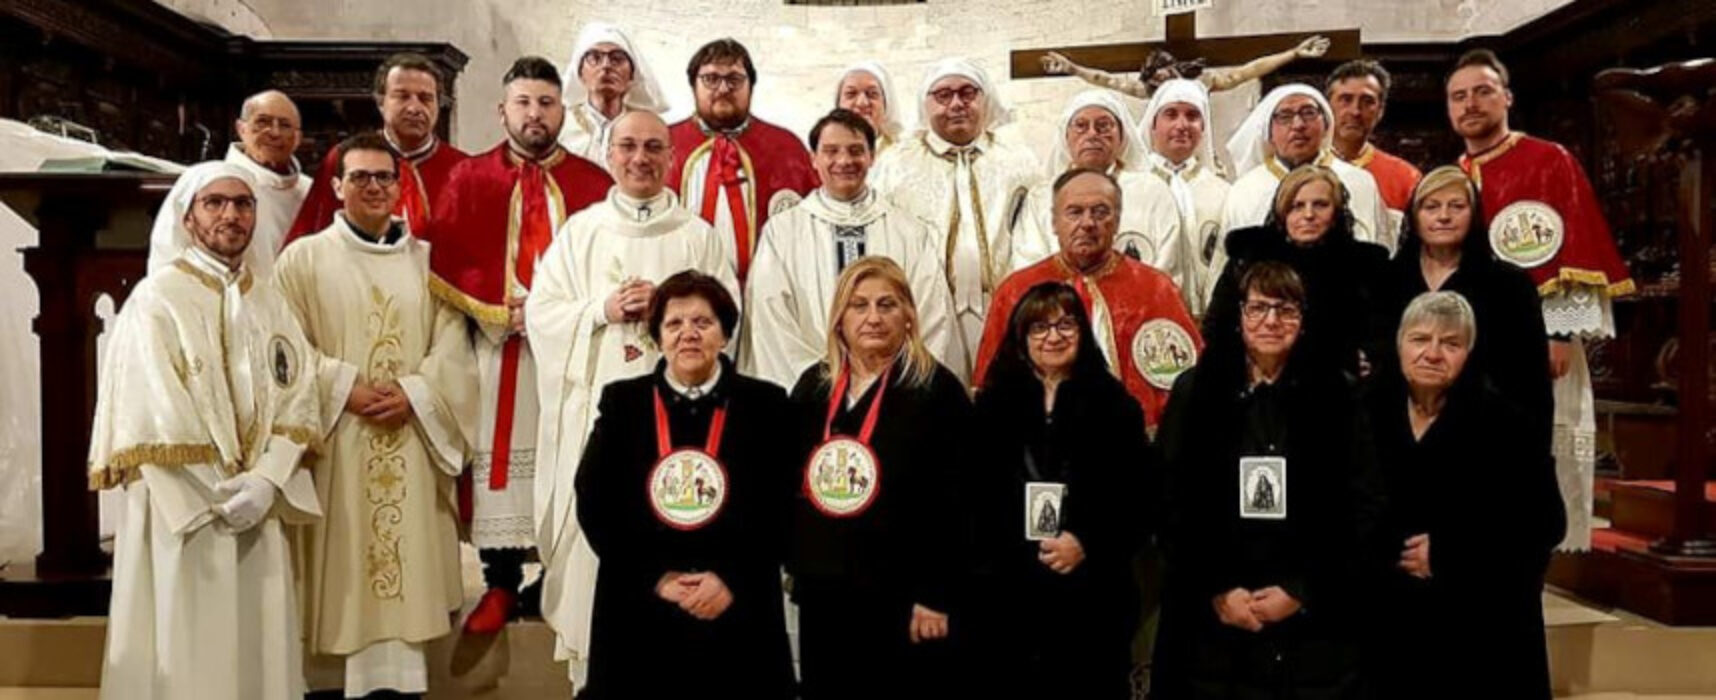 Il Venerdì Santo a Bisceglie: tradizione e novità con la collaborazione tra due confraternite